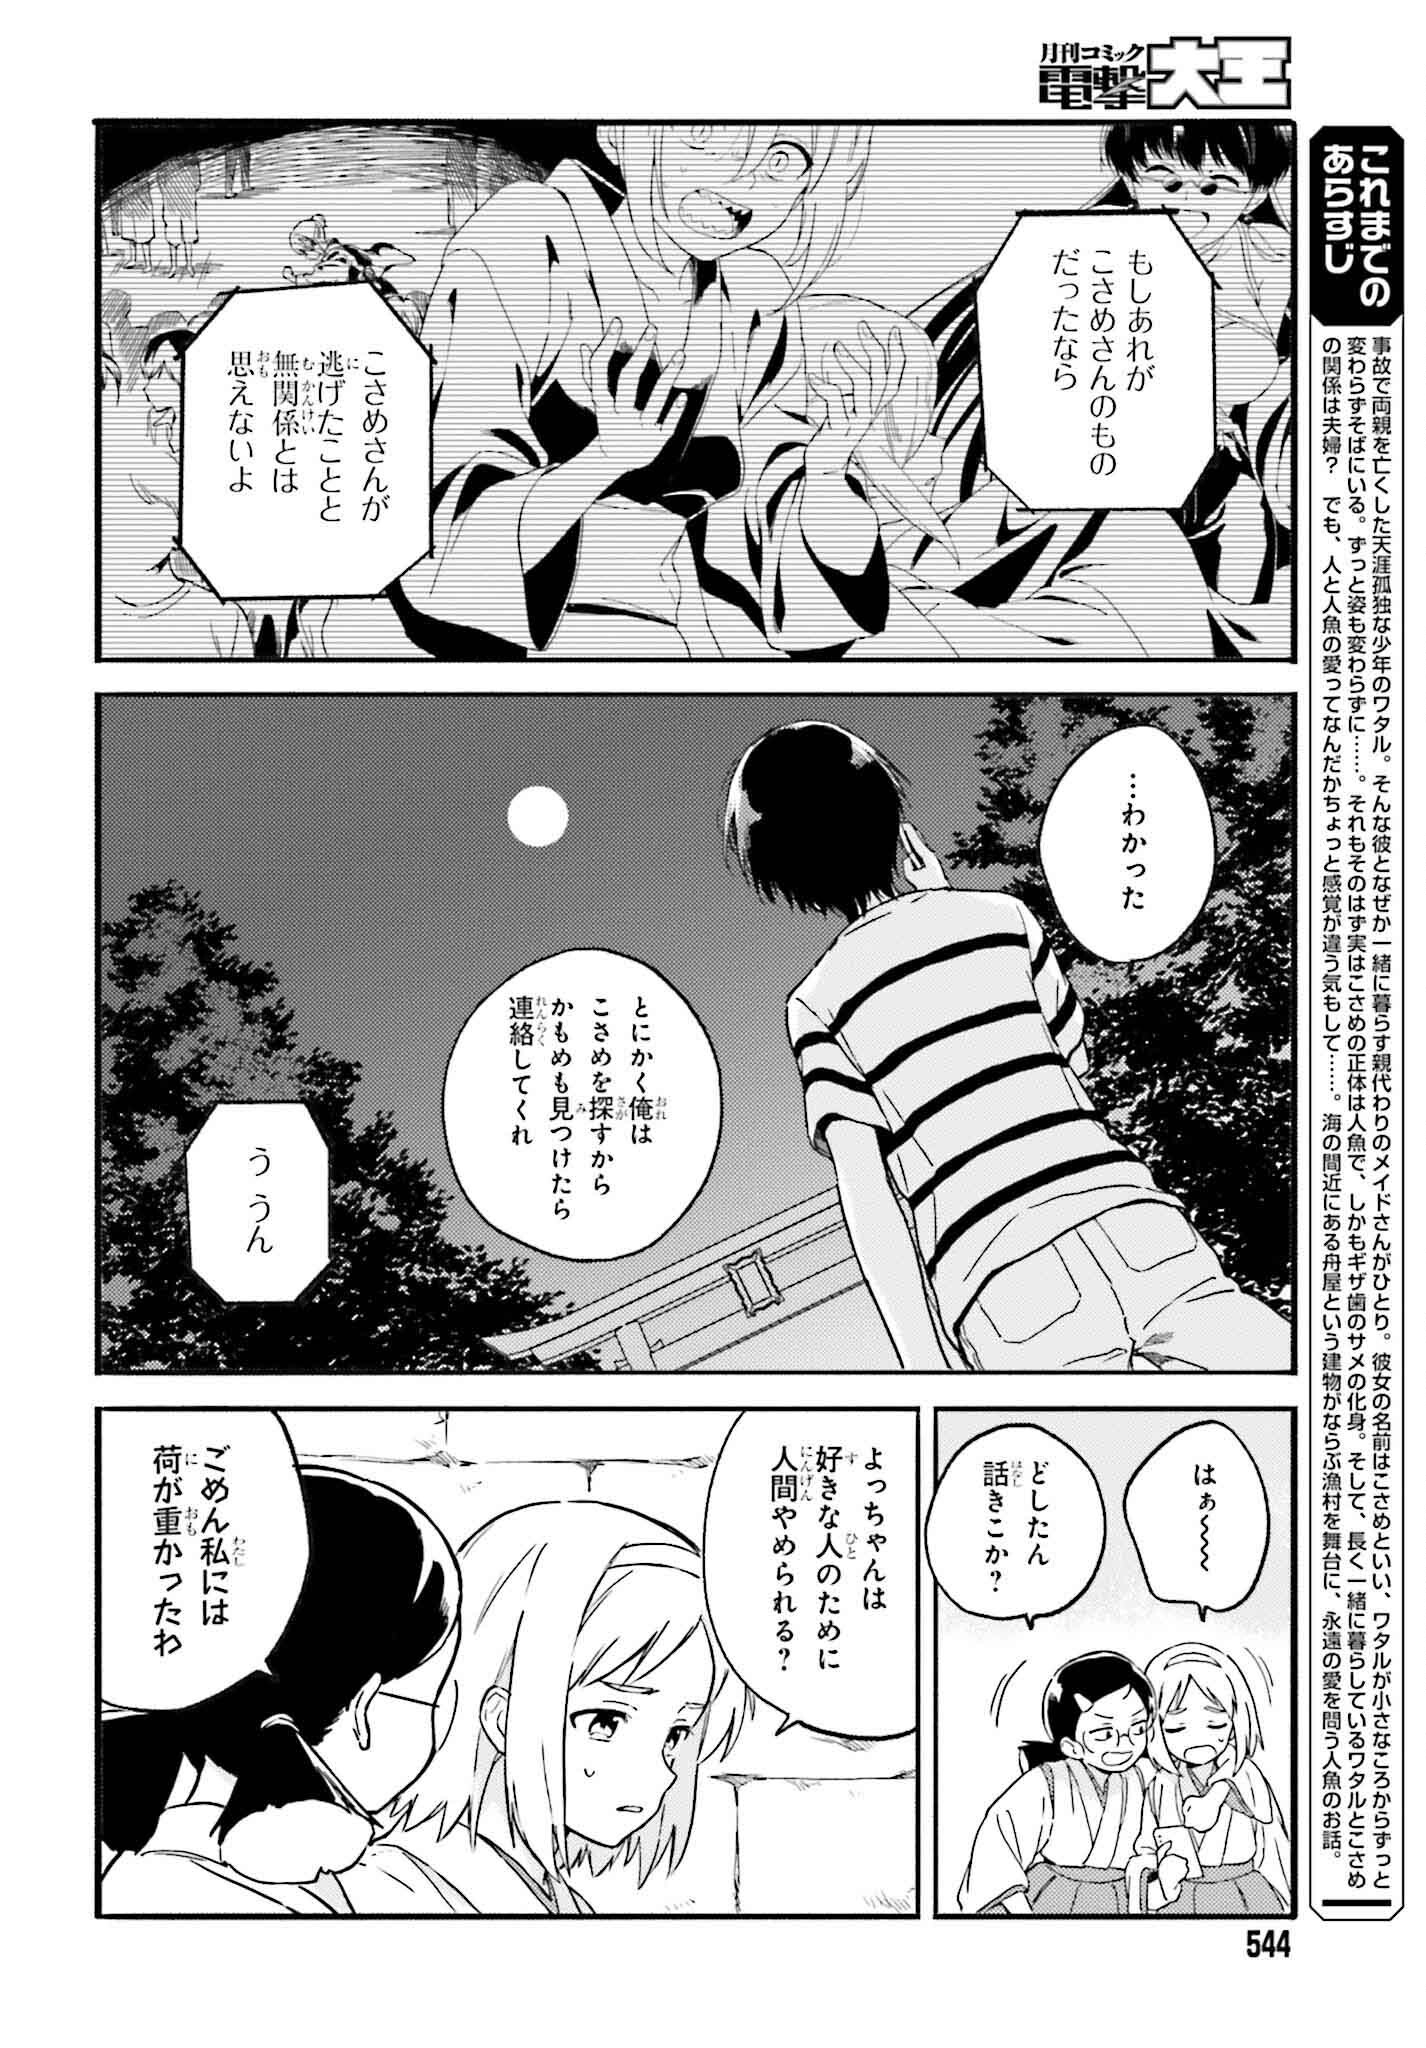 Nagisa no Shark Maid - Chapter 12 - Page 2